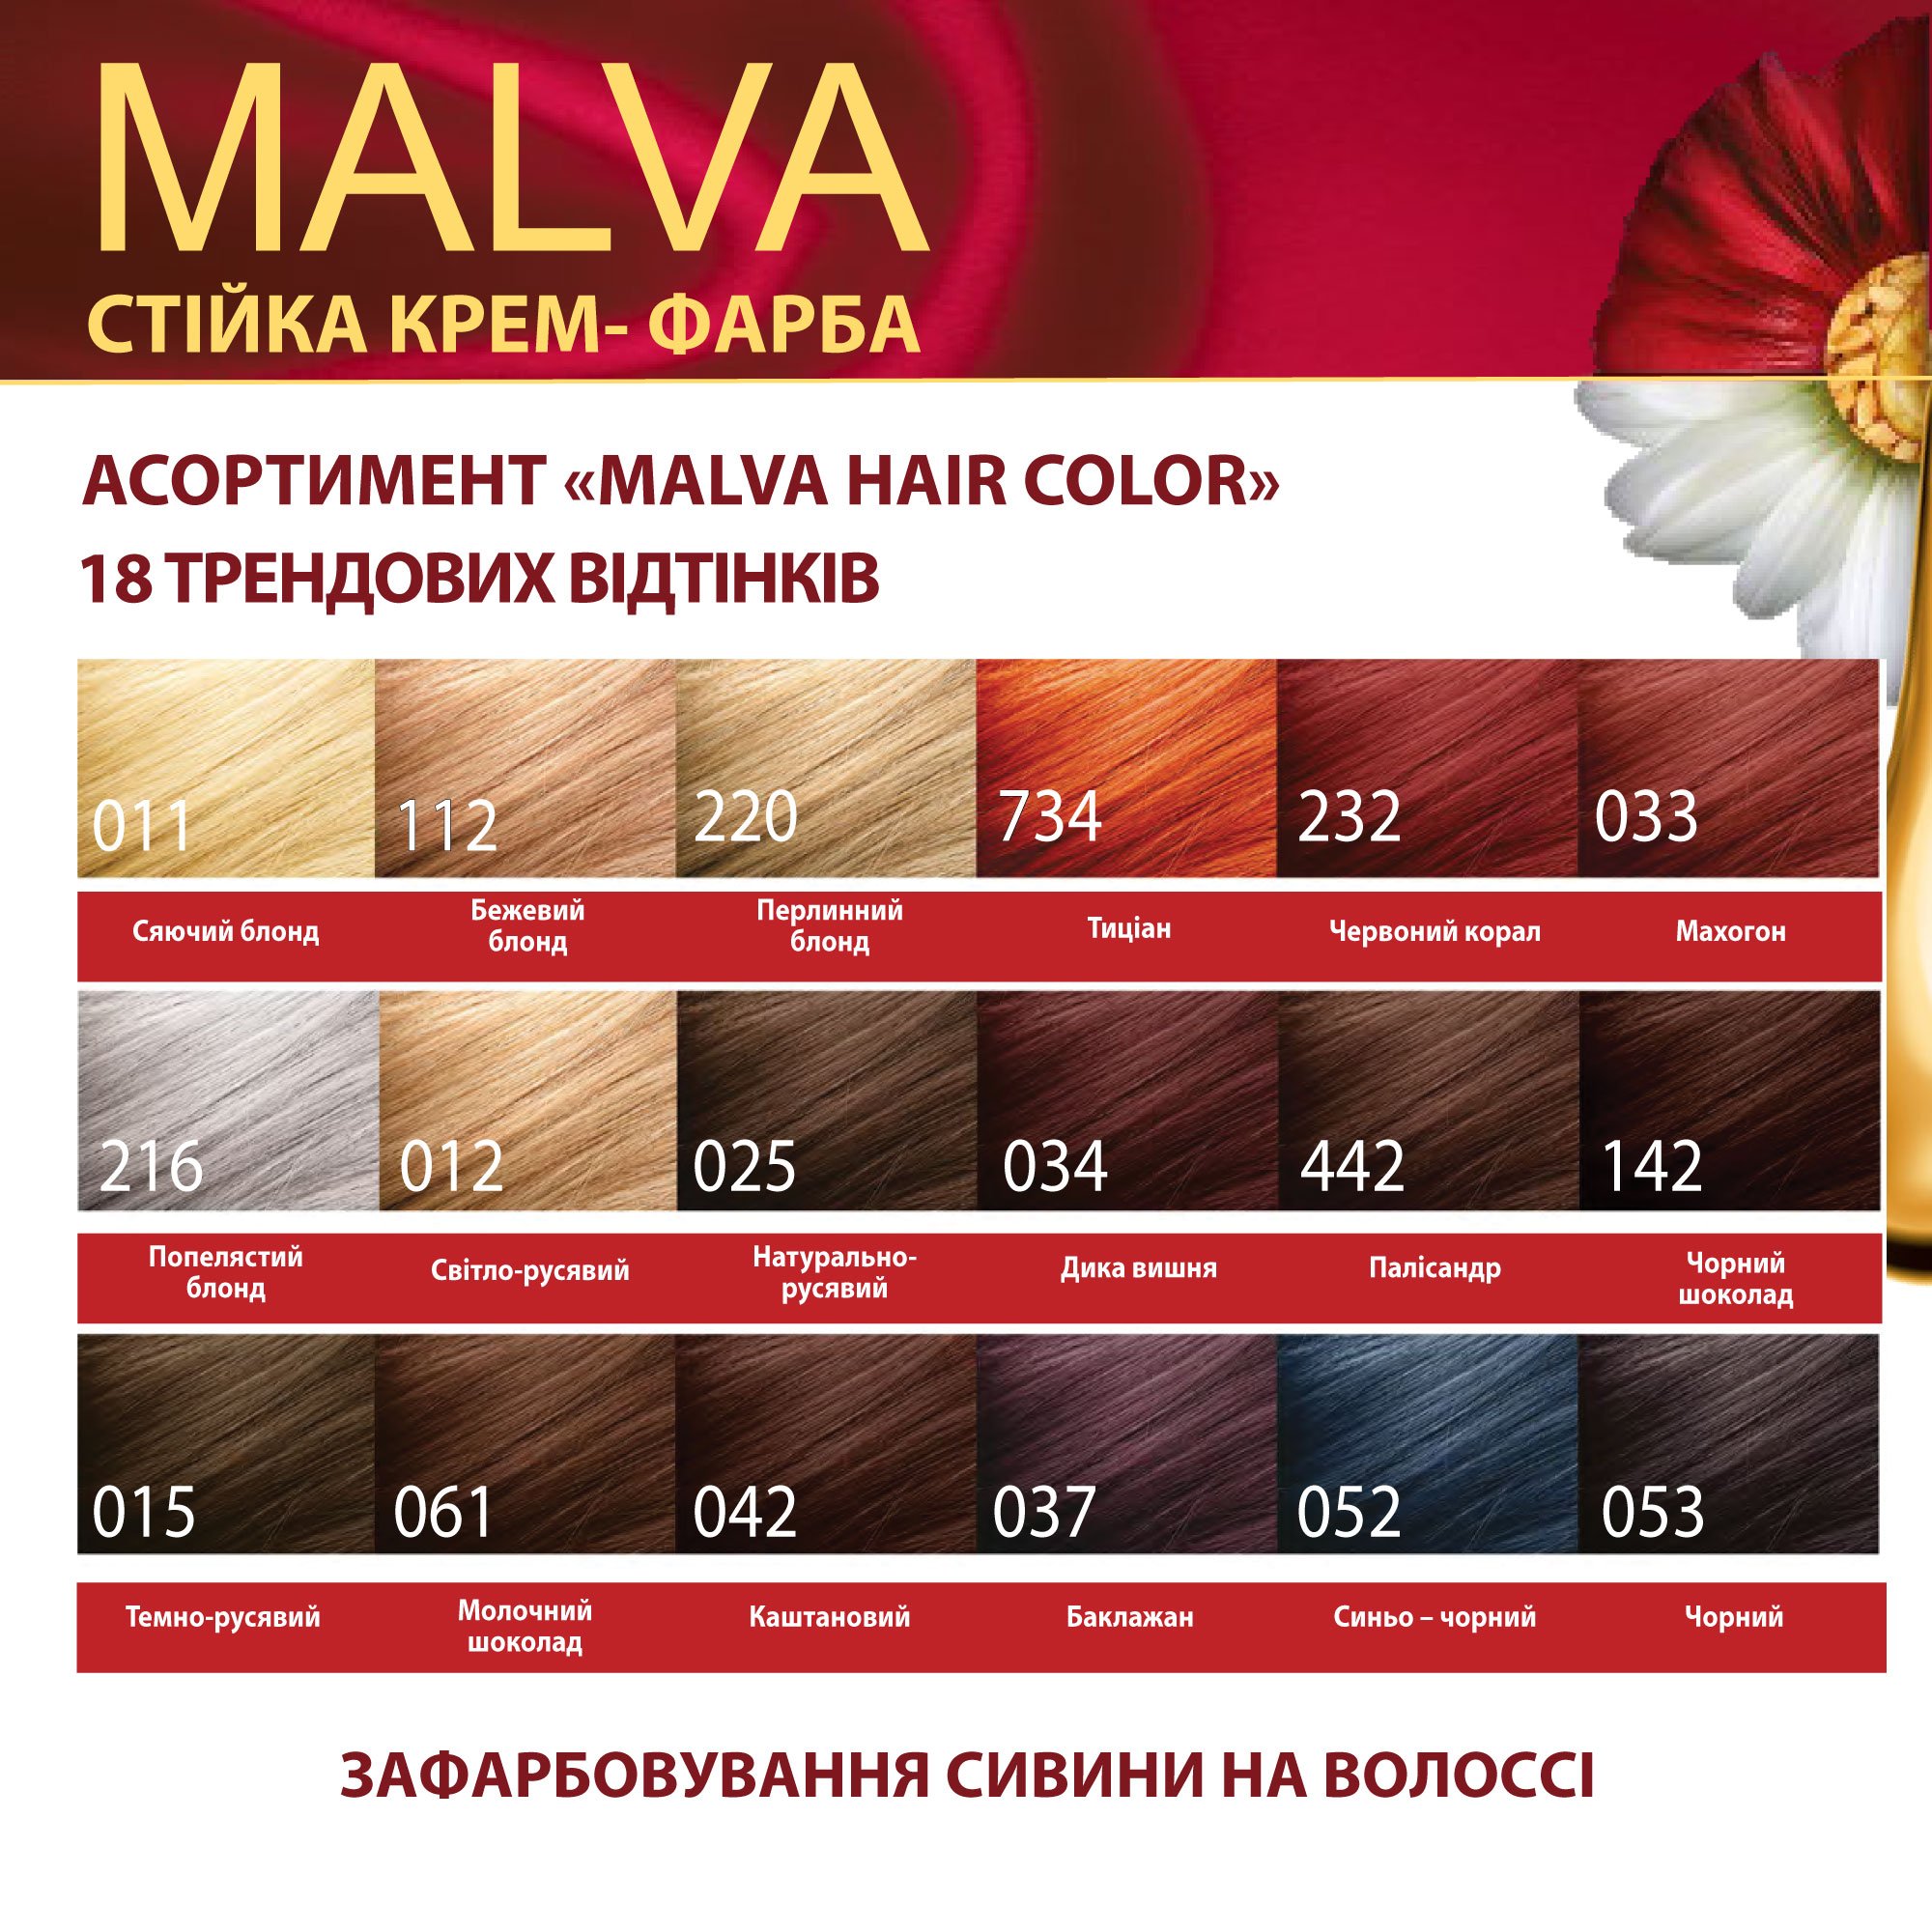 Крем-фарба для волосся Acme Color Malva, відтінок 734 (Тиціан), 95 мл - фото 6